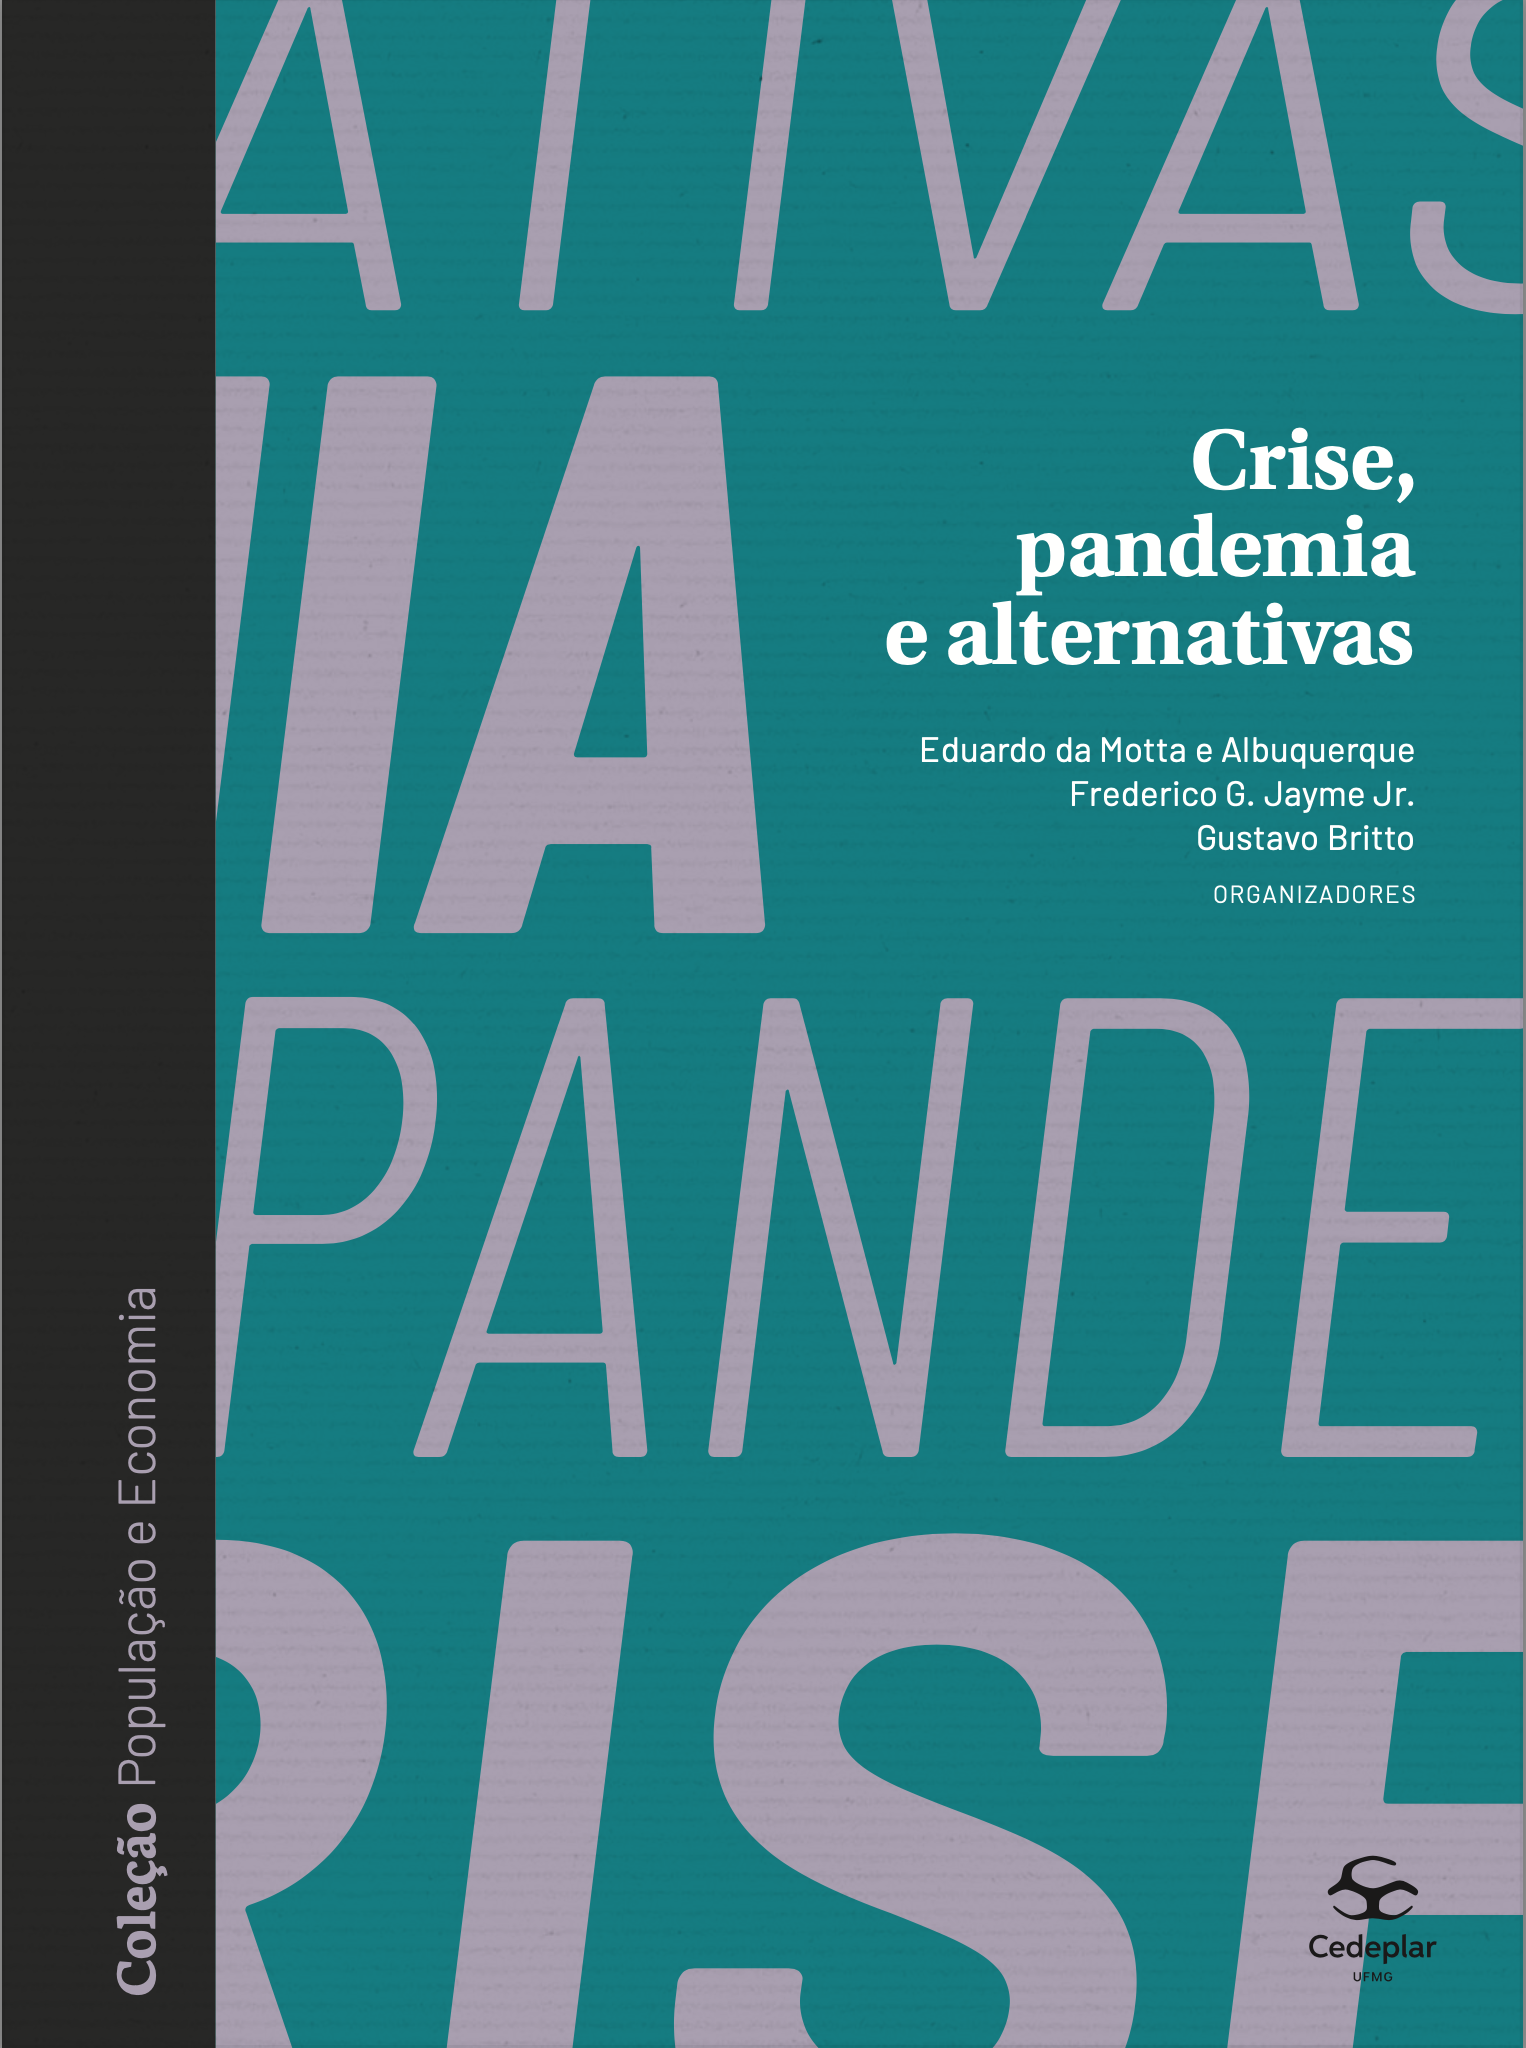 Crise, pandemia e alternativas é a mais recente publicação da coleção 'População e Economia', do Cedeplar